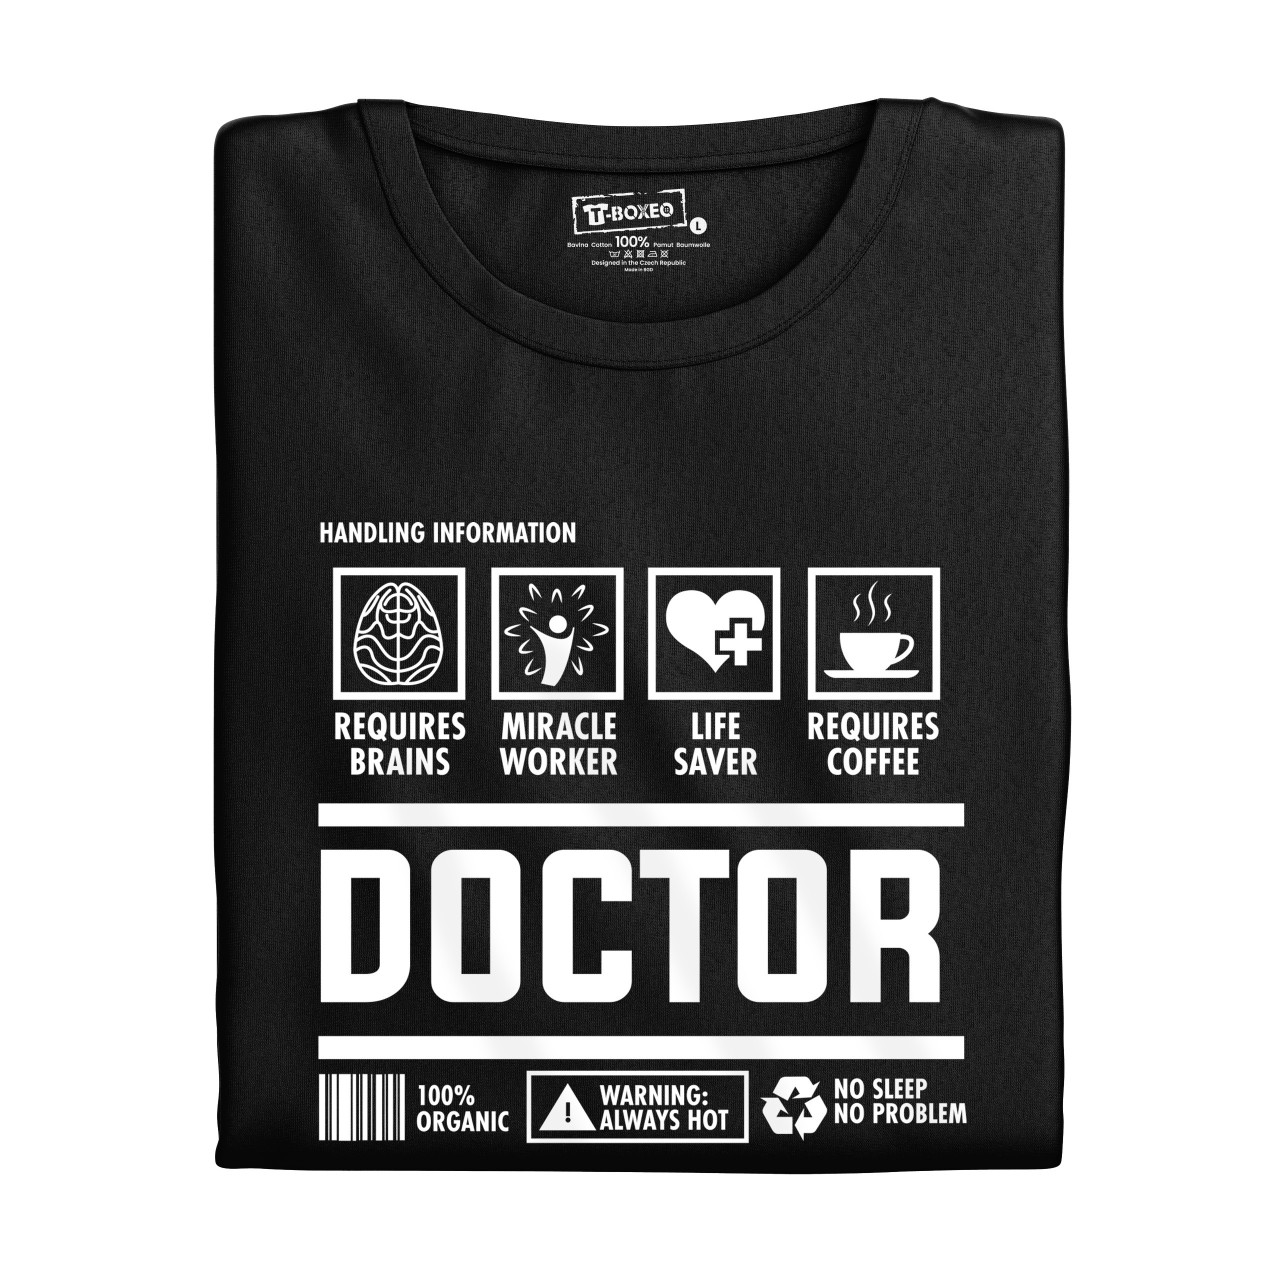 Pánské tričko s potiskem "Doctor"